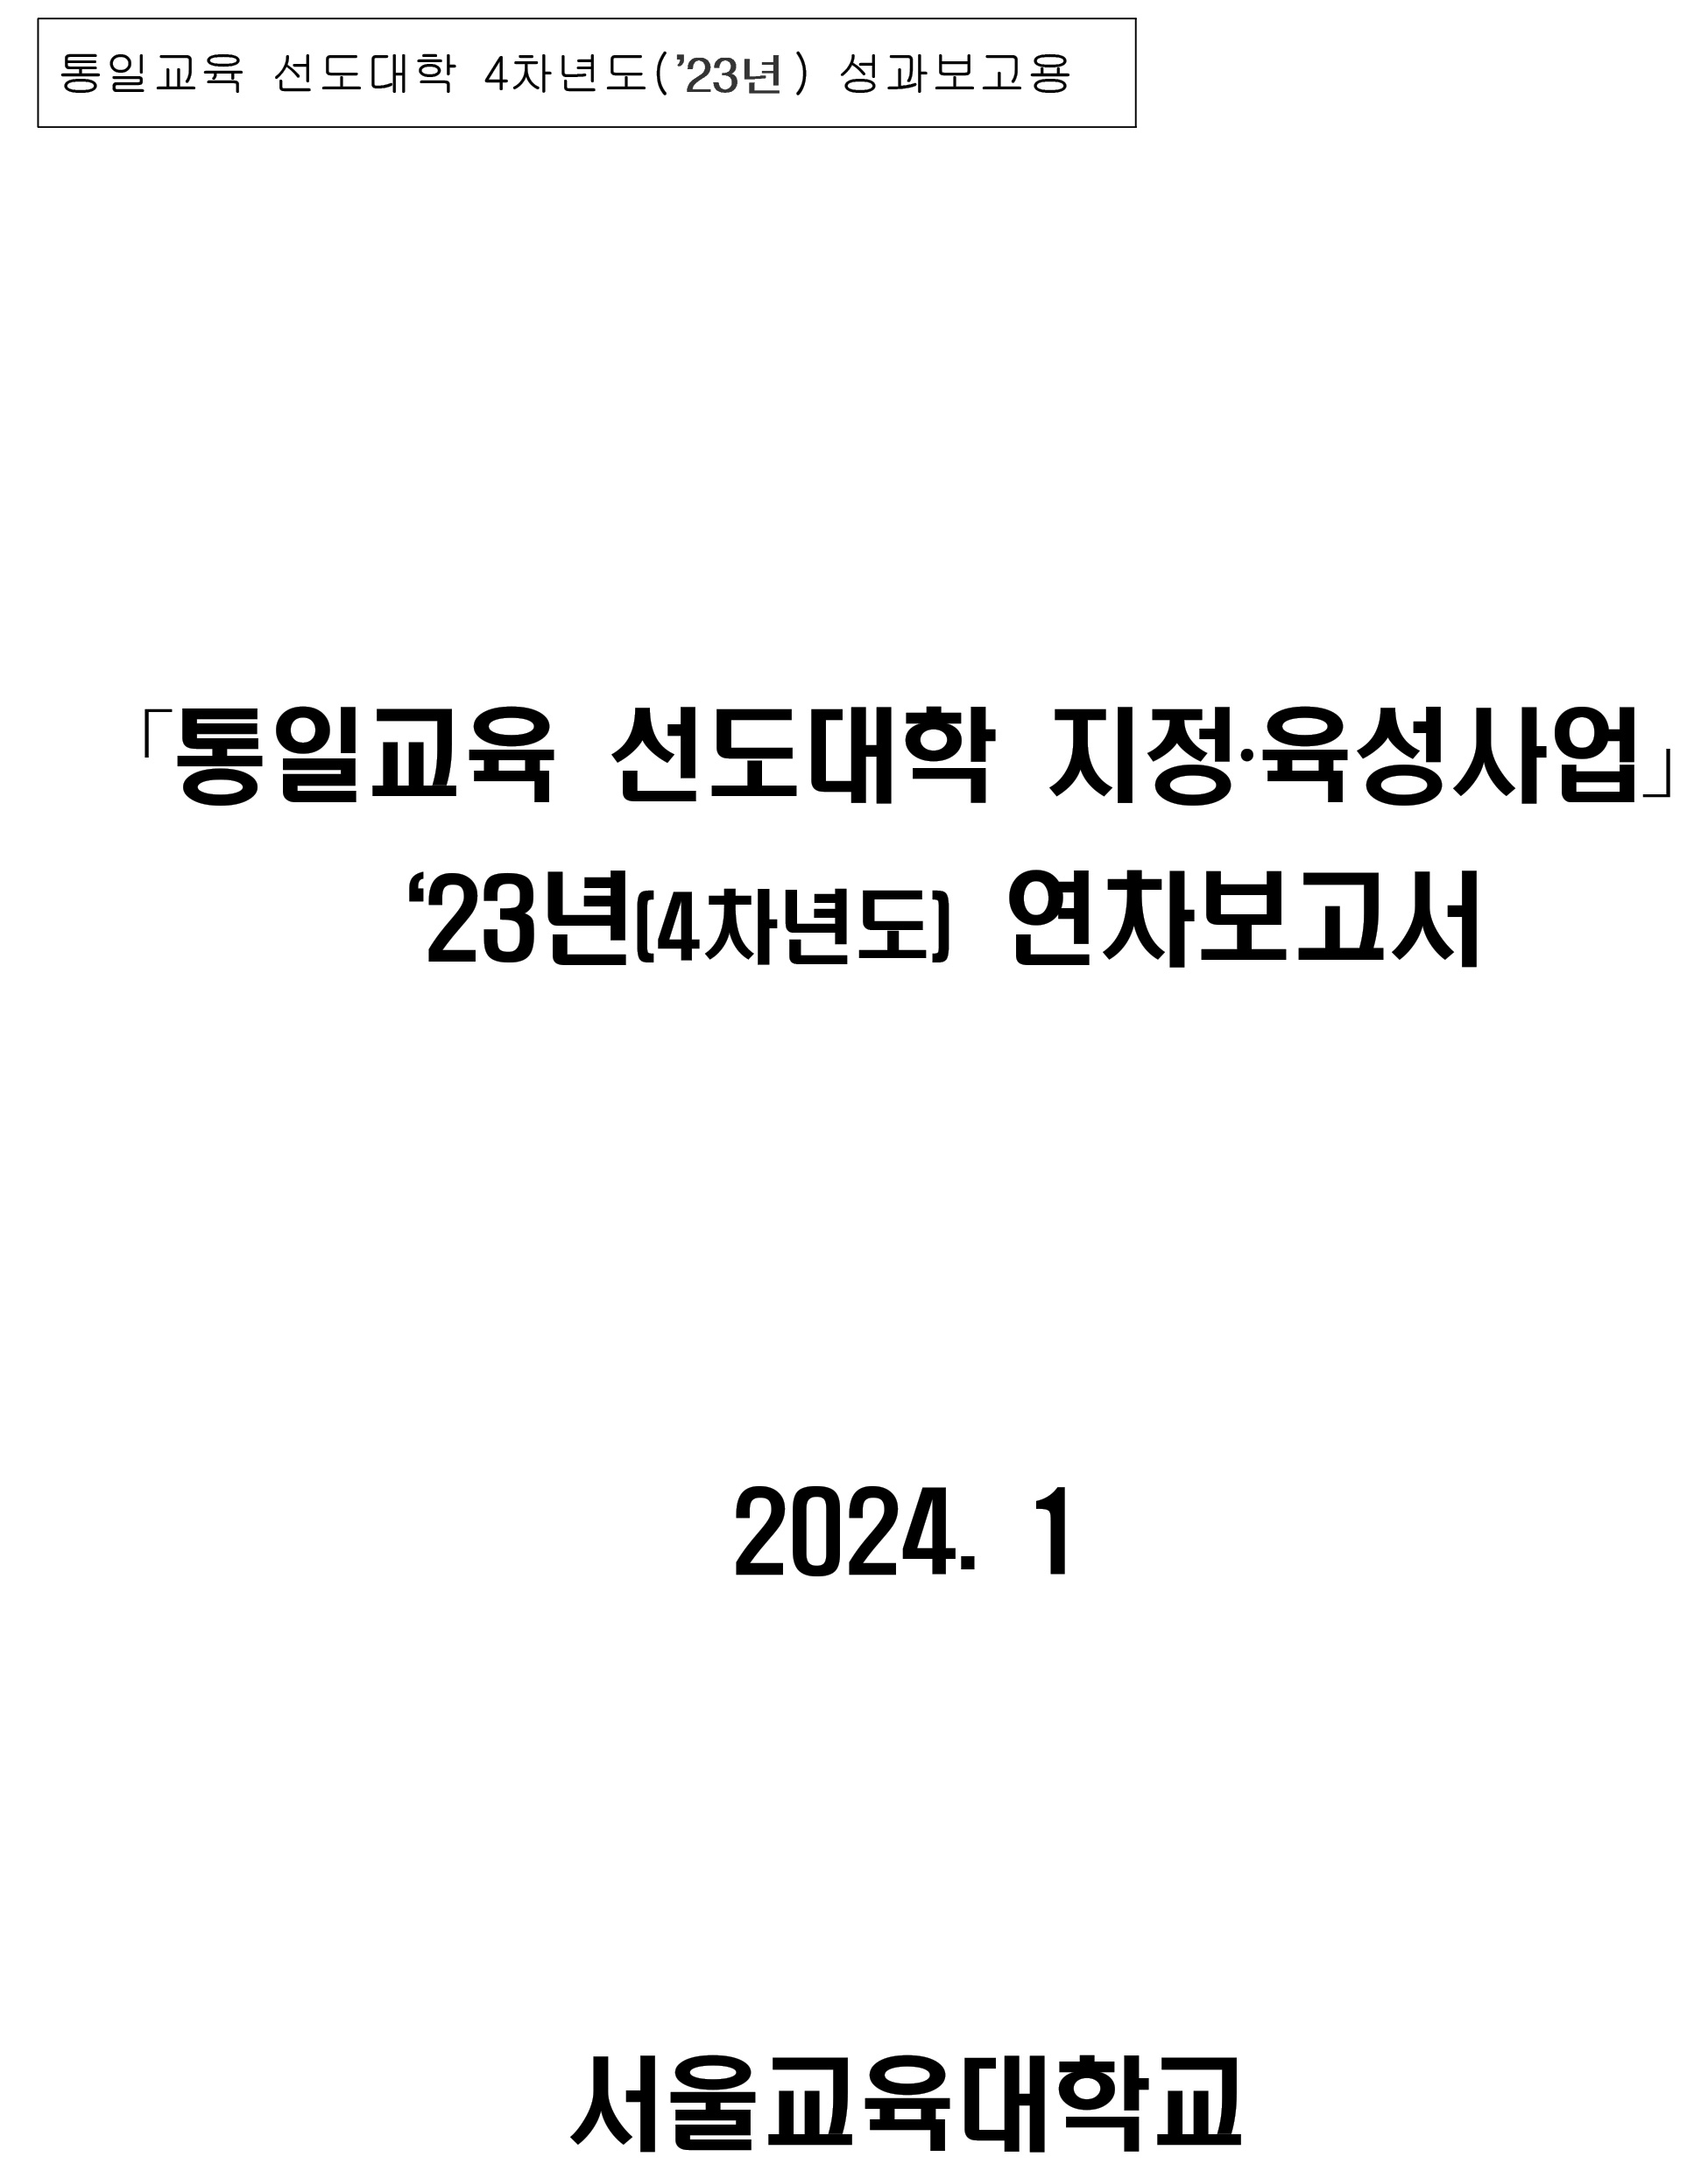 최신자료-통일교육 선도대학 2023년 성과보고서(서울교육대학교)